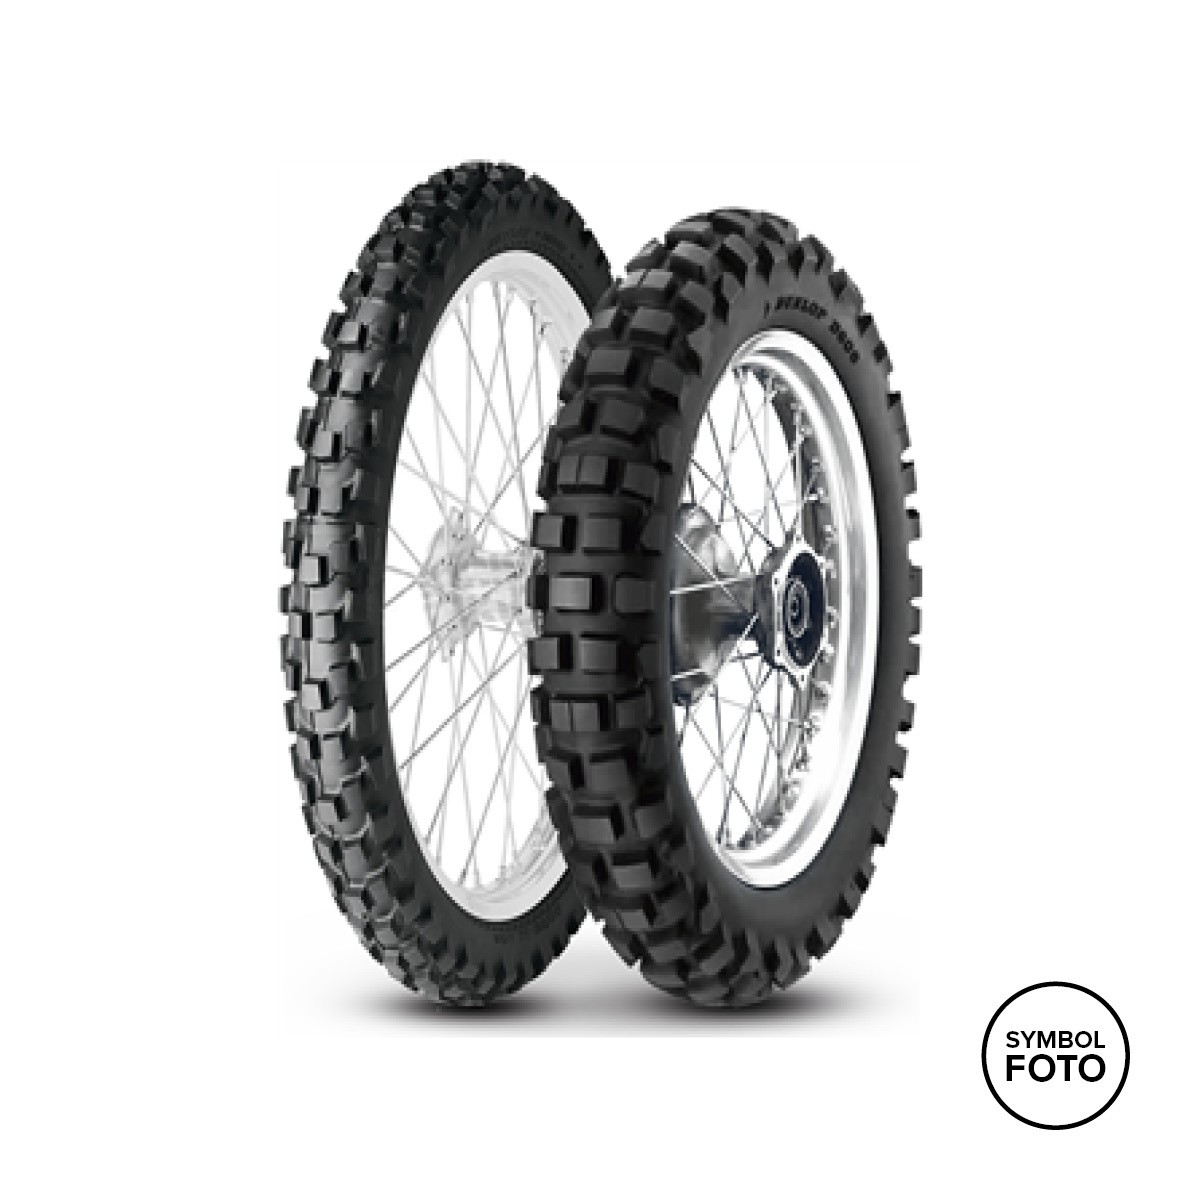 Dunlop Reifen D606 F - bei Auner online kaufen